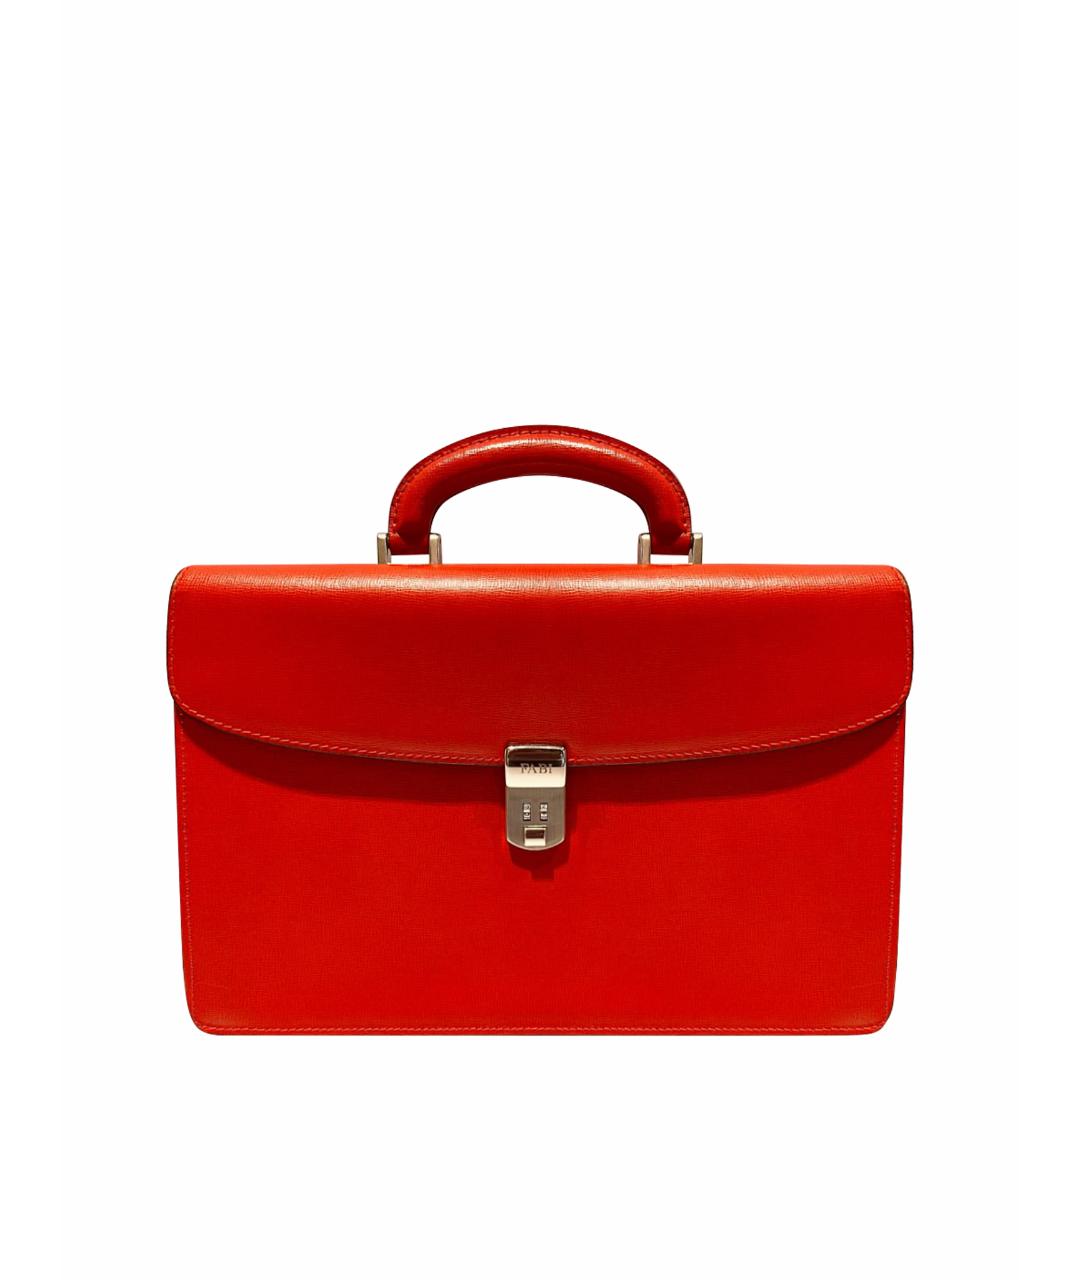 FABI Красная кожаная сумка с короткими ручками, фото 1